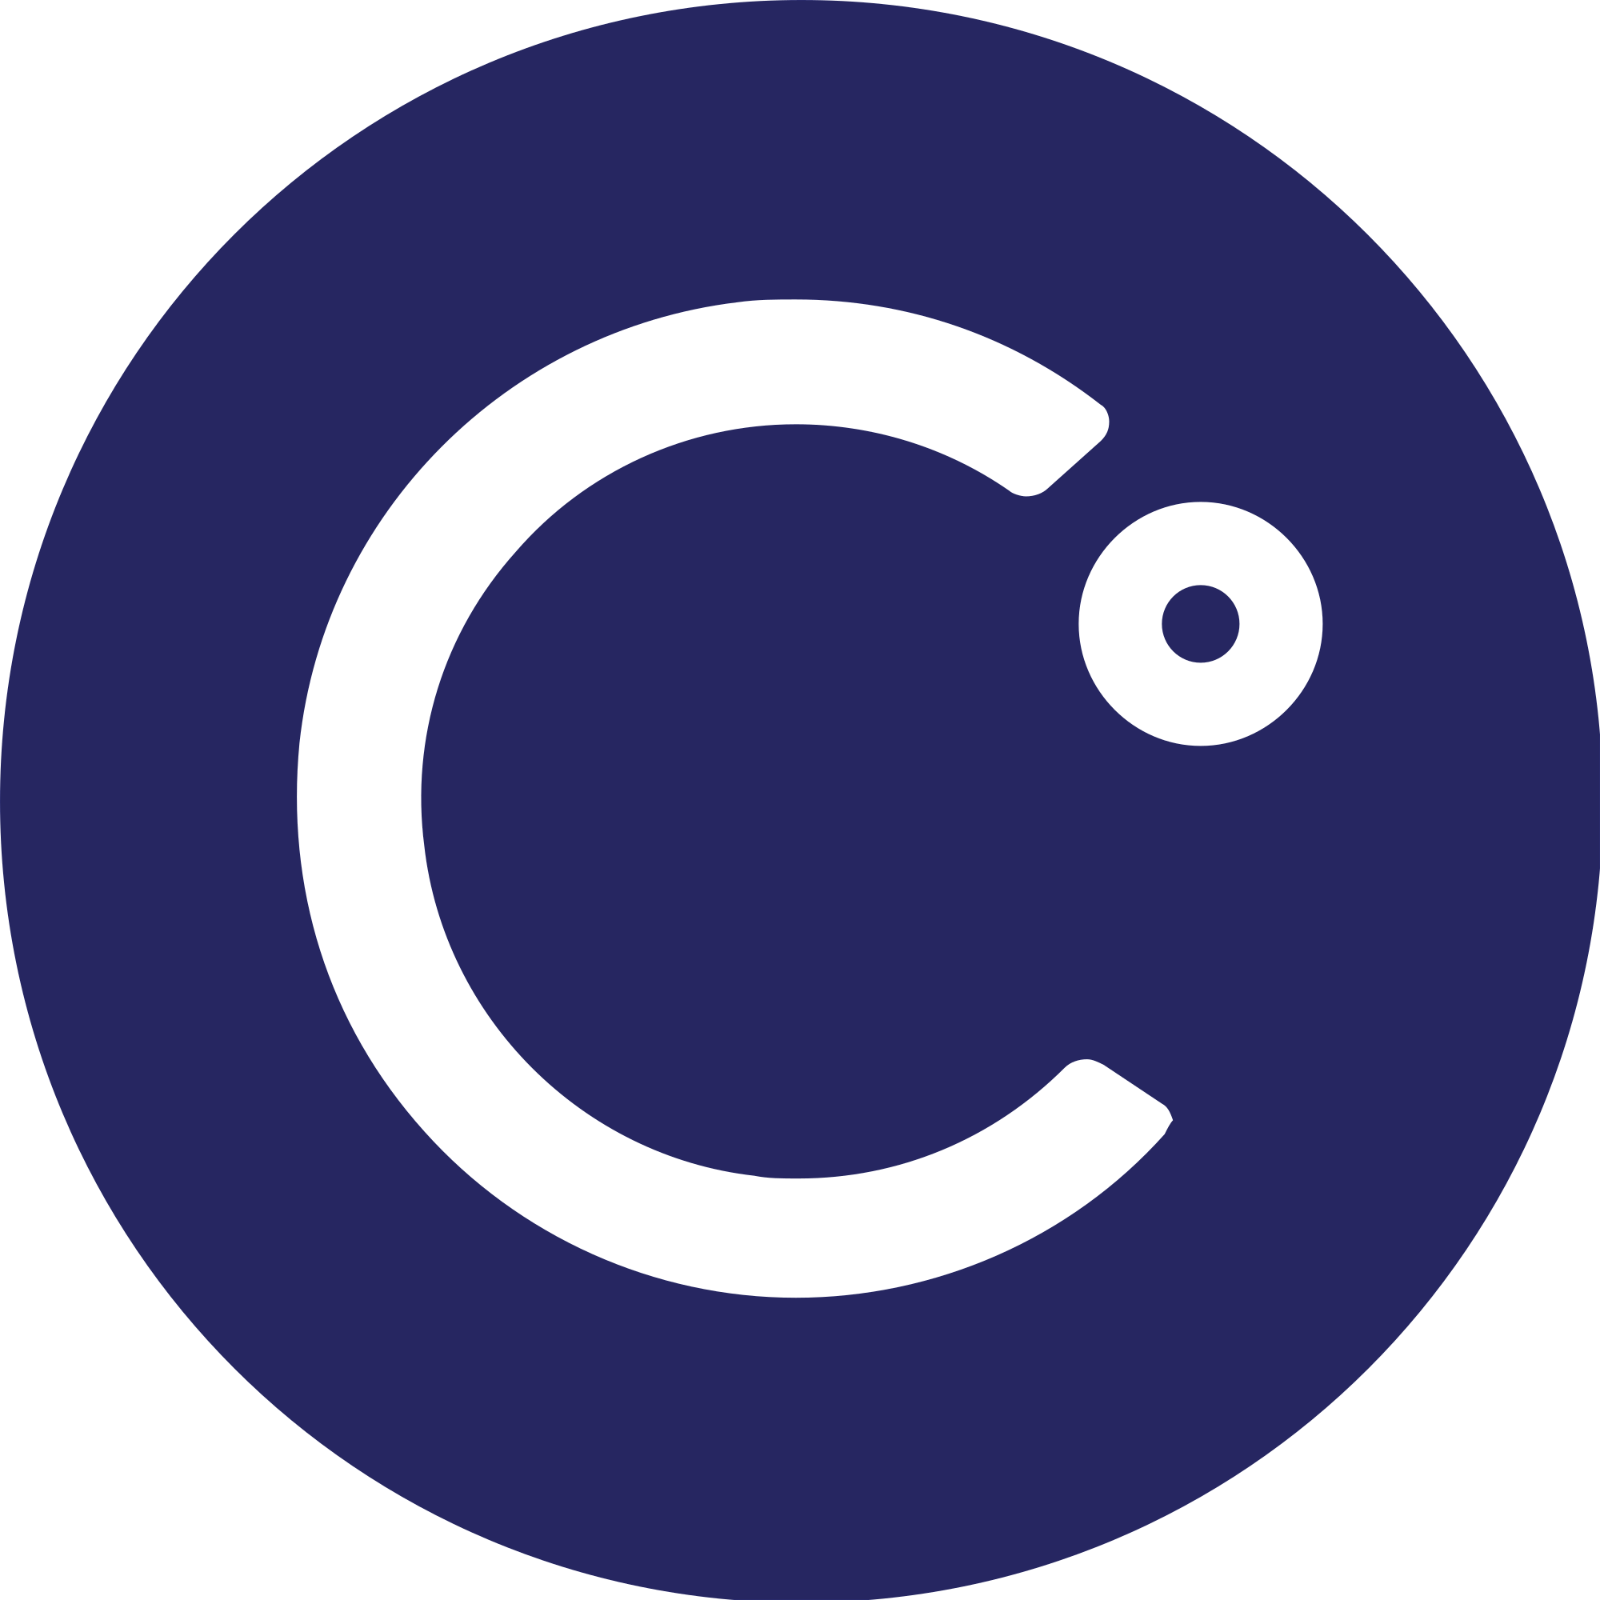 Celsius Logo